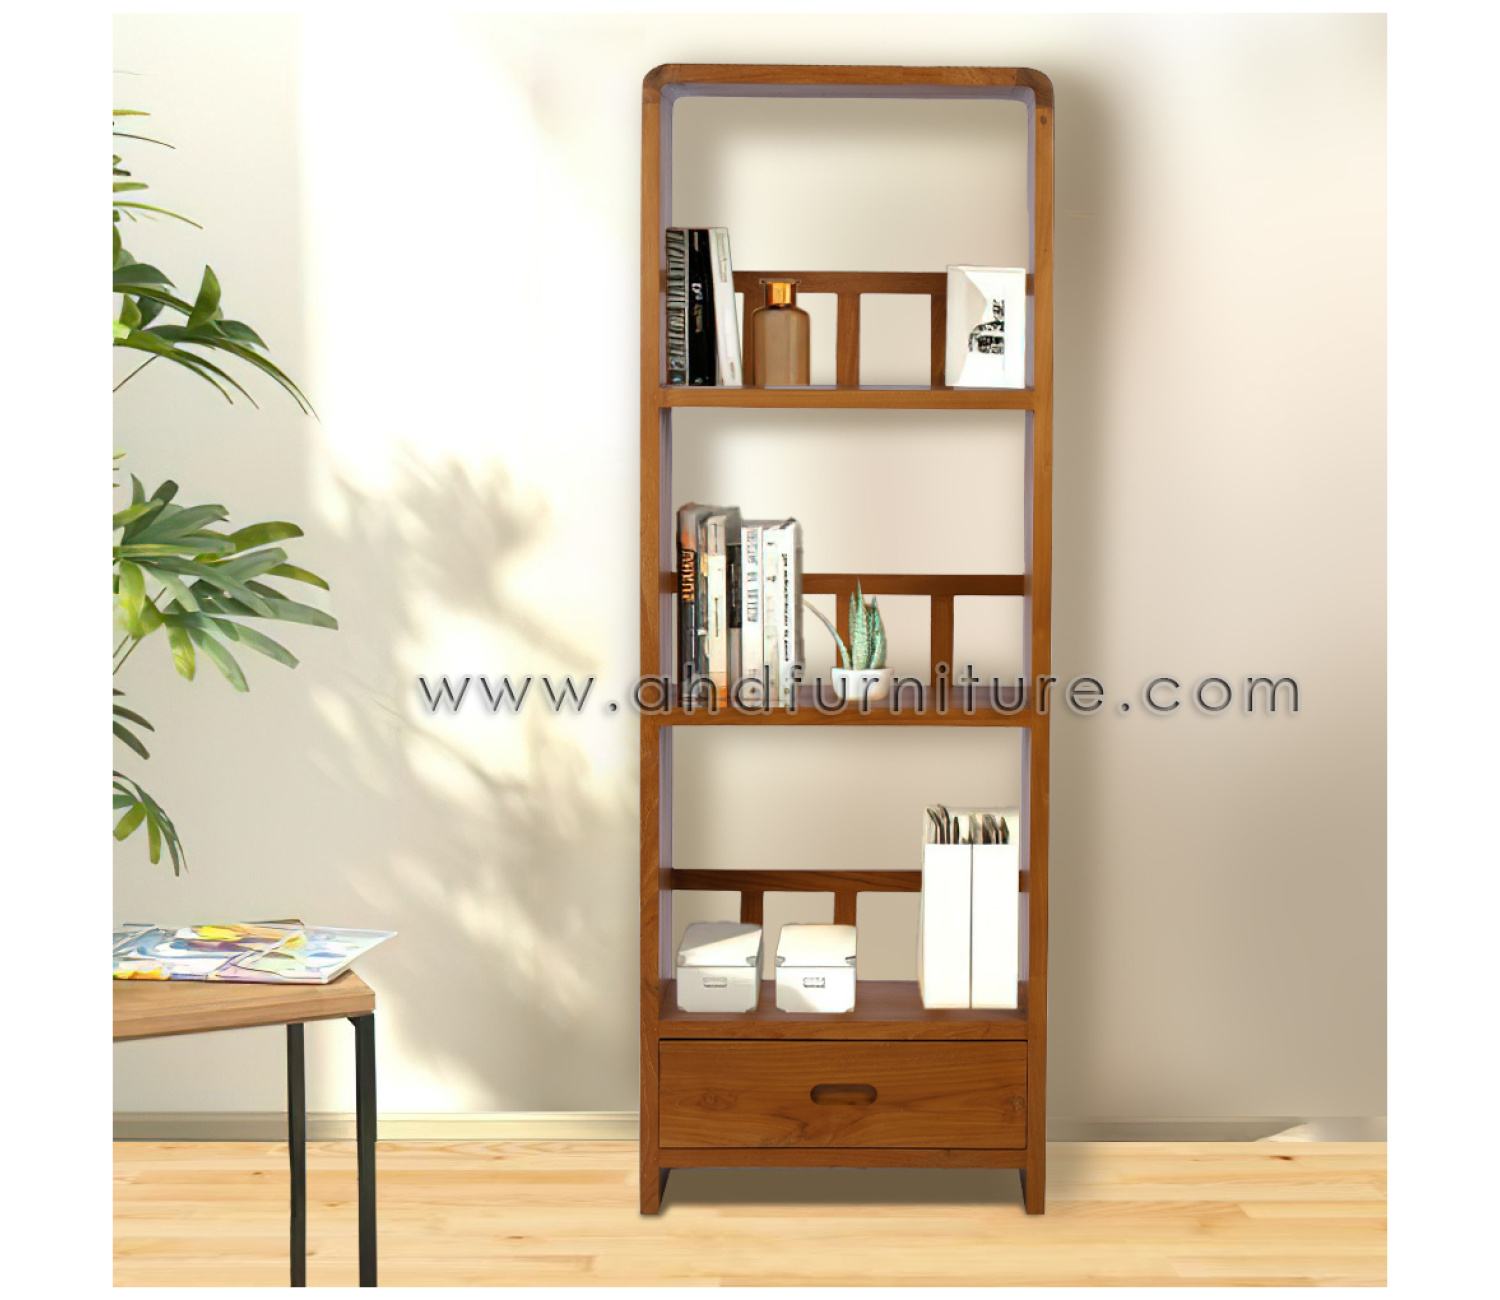 Oval Wooden Book Shelf in Teak Wood